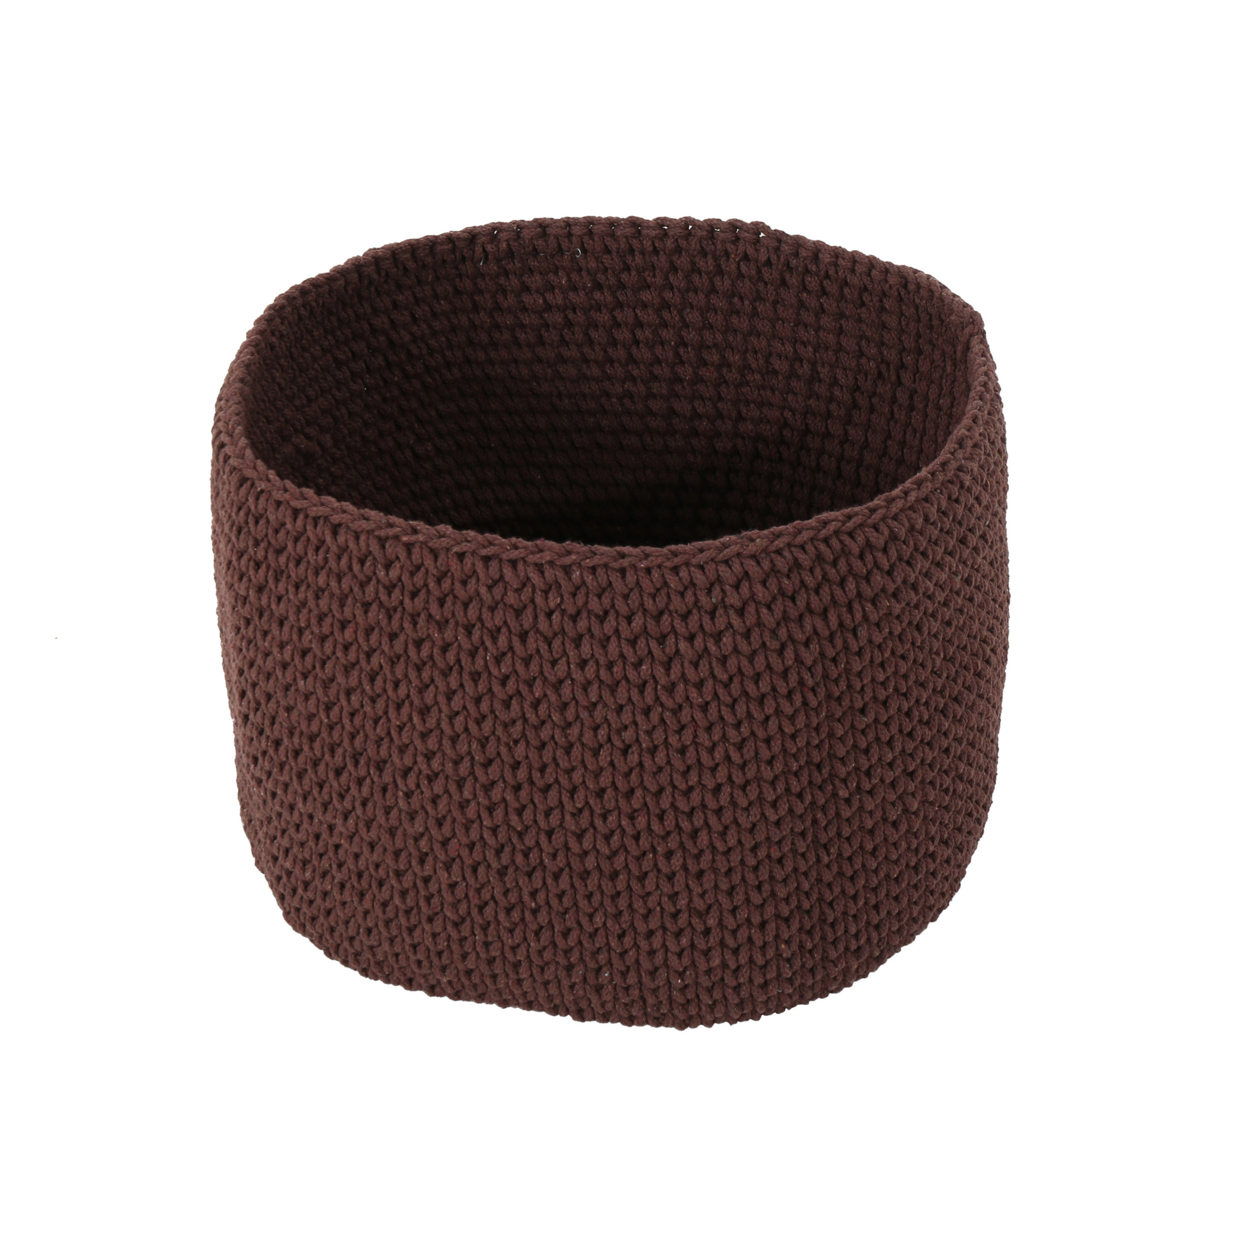 Moore Knitten Cotton Sundries Basket - Coffee